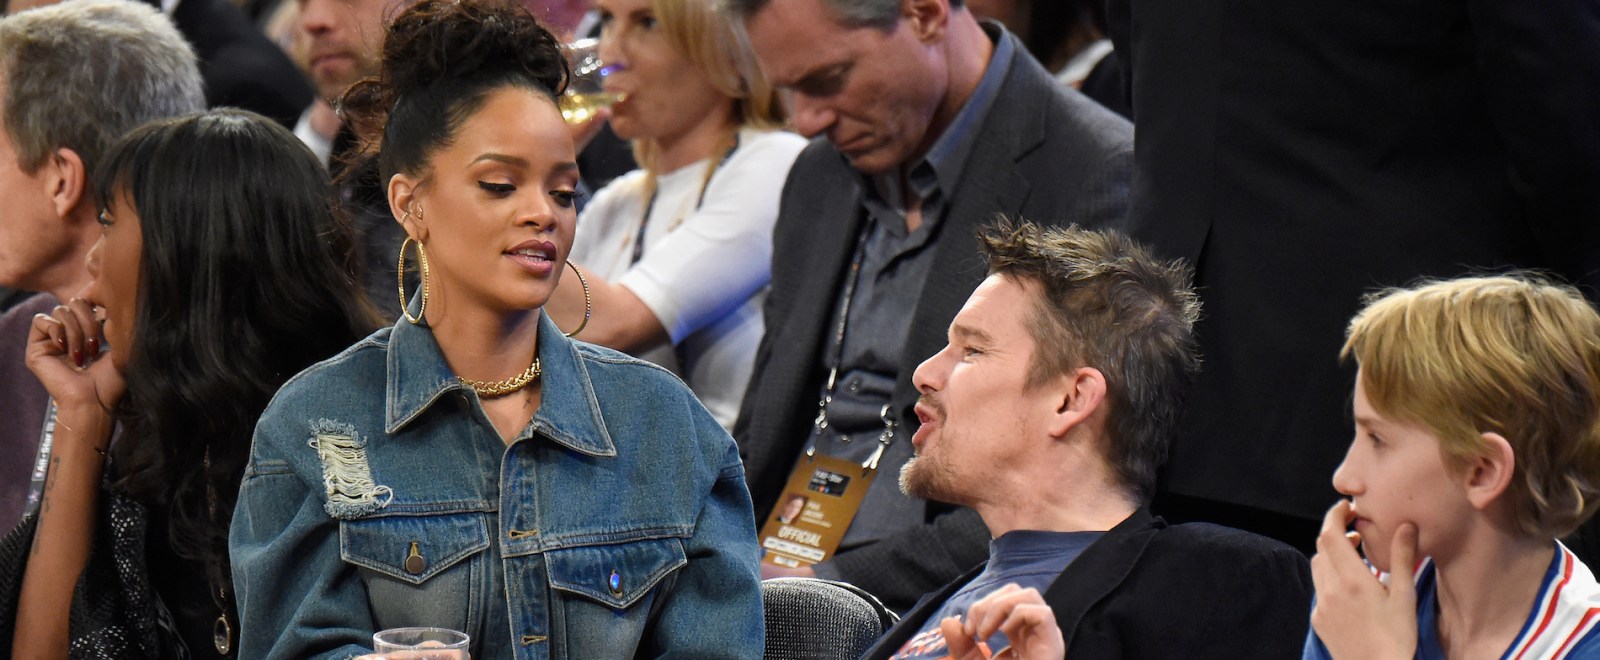 Rihanna Ethan Hawke 64th NBA All-Star Game 2015